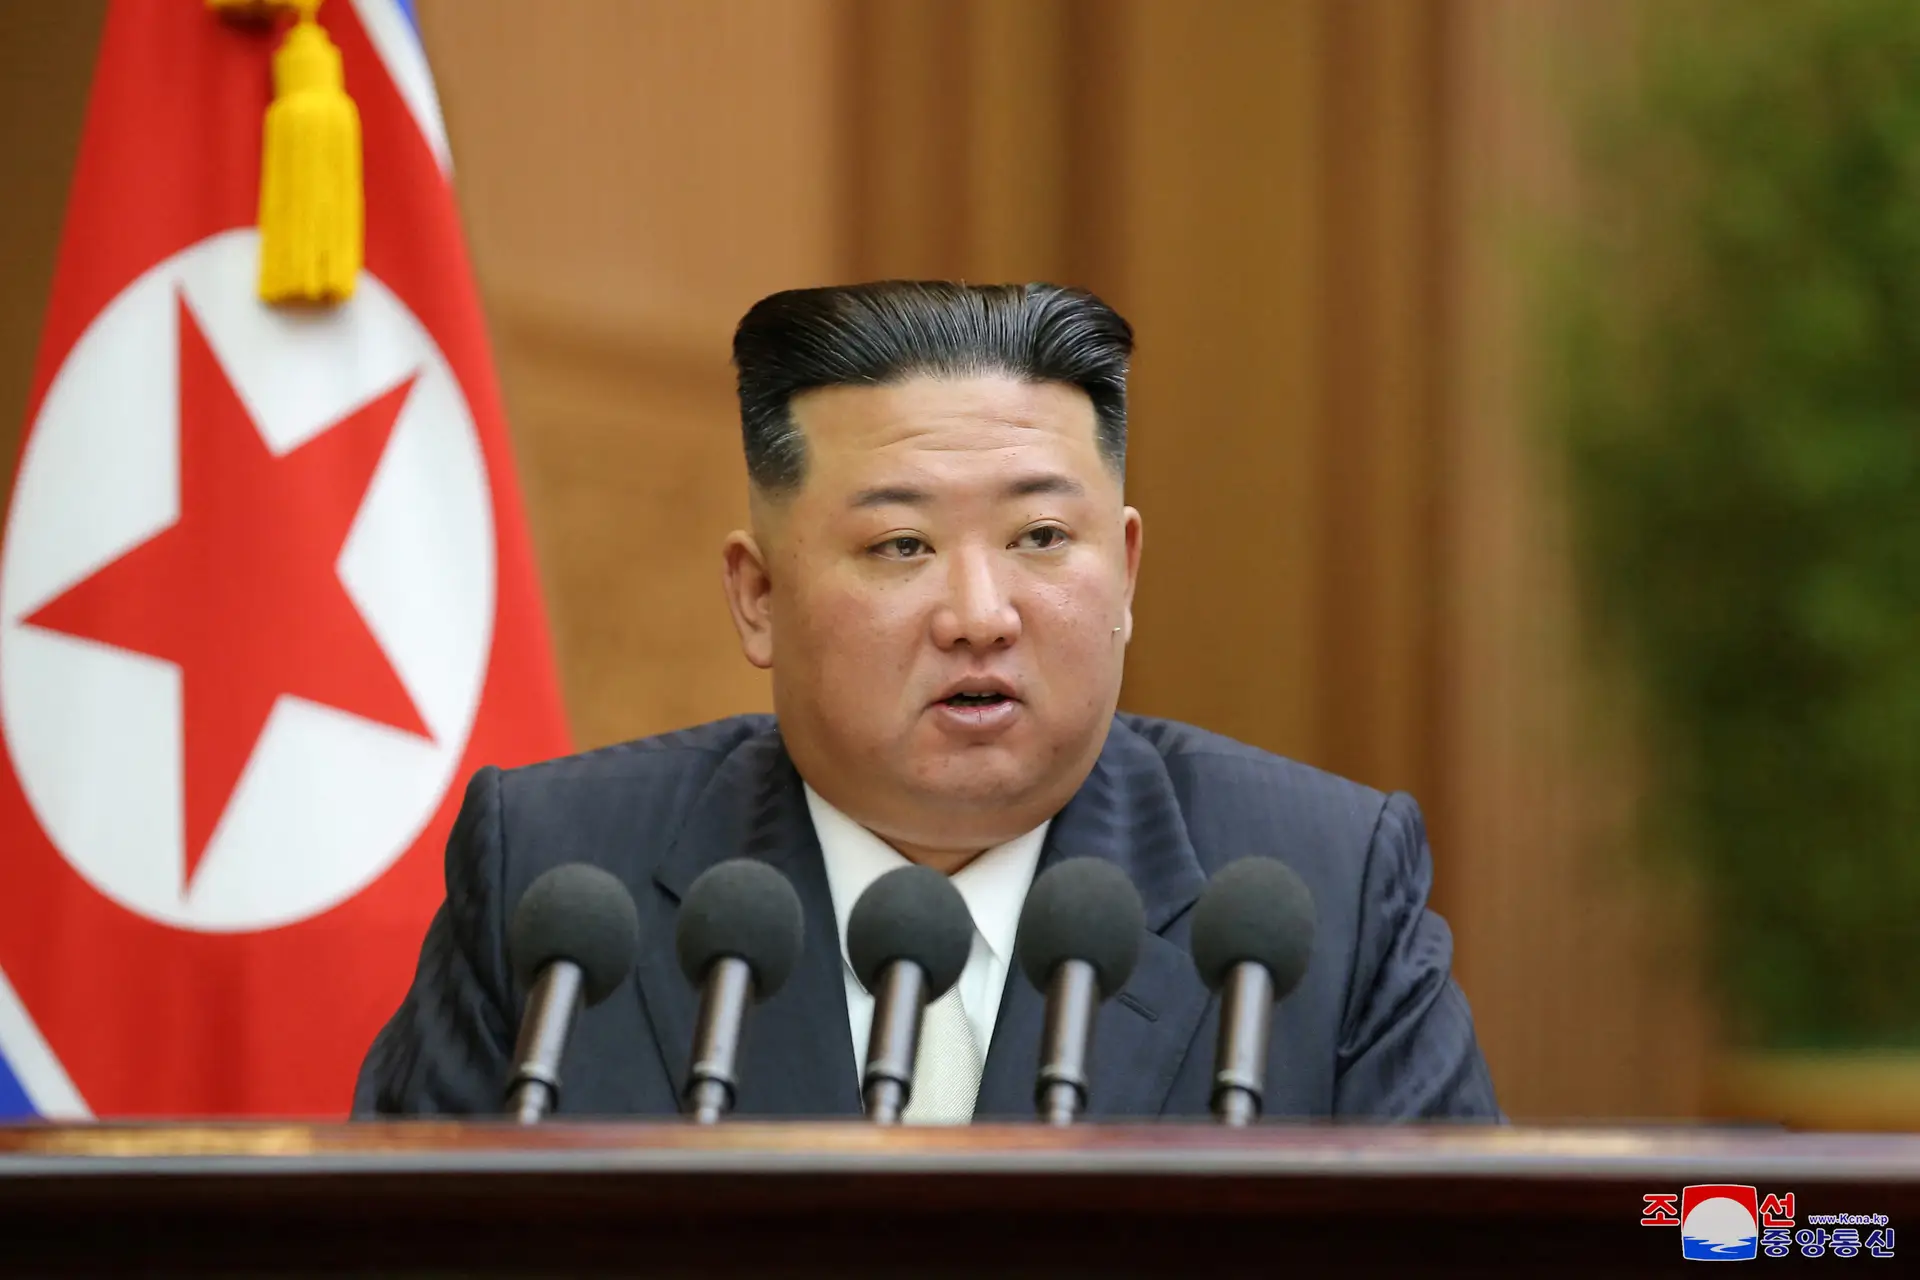 Líder norte-coreano, Kim Jong-un